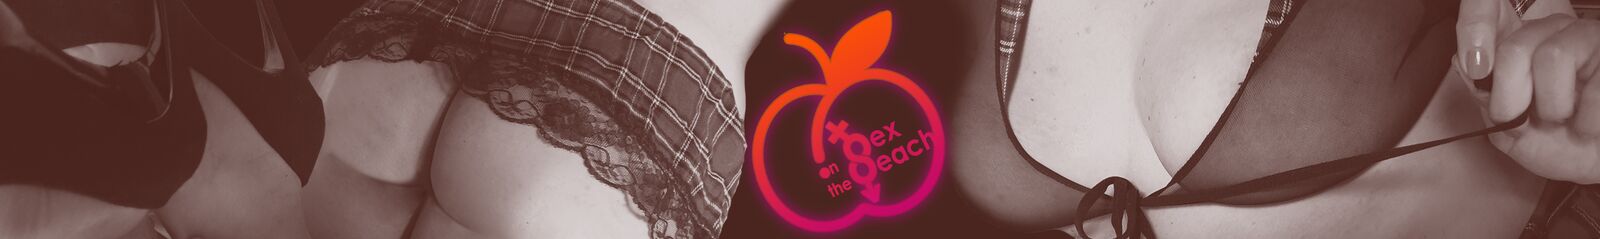 Sex on the peach